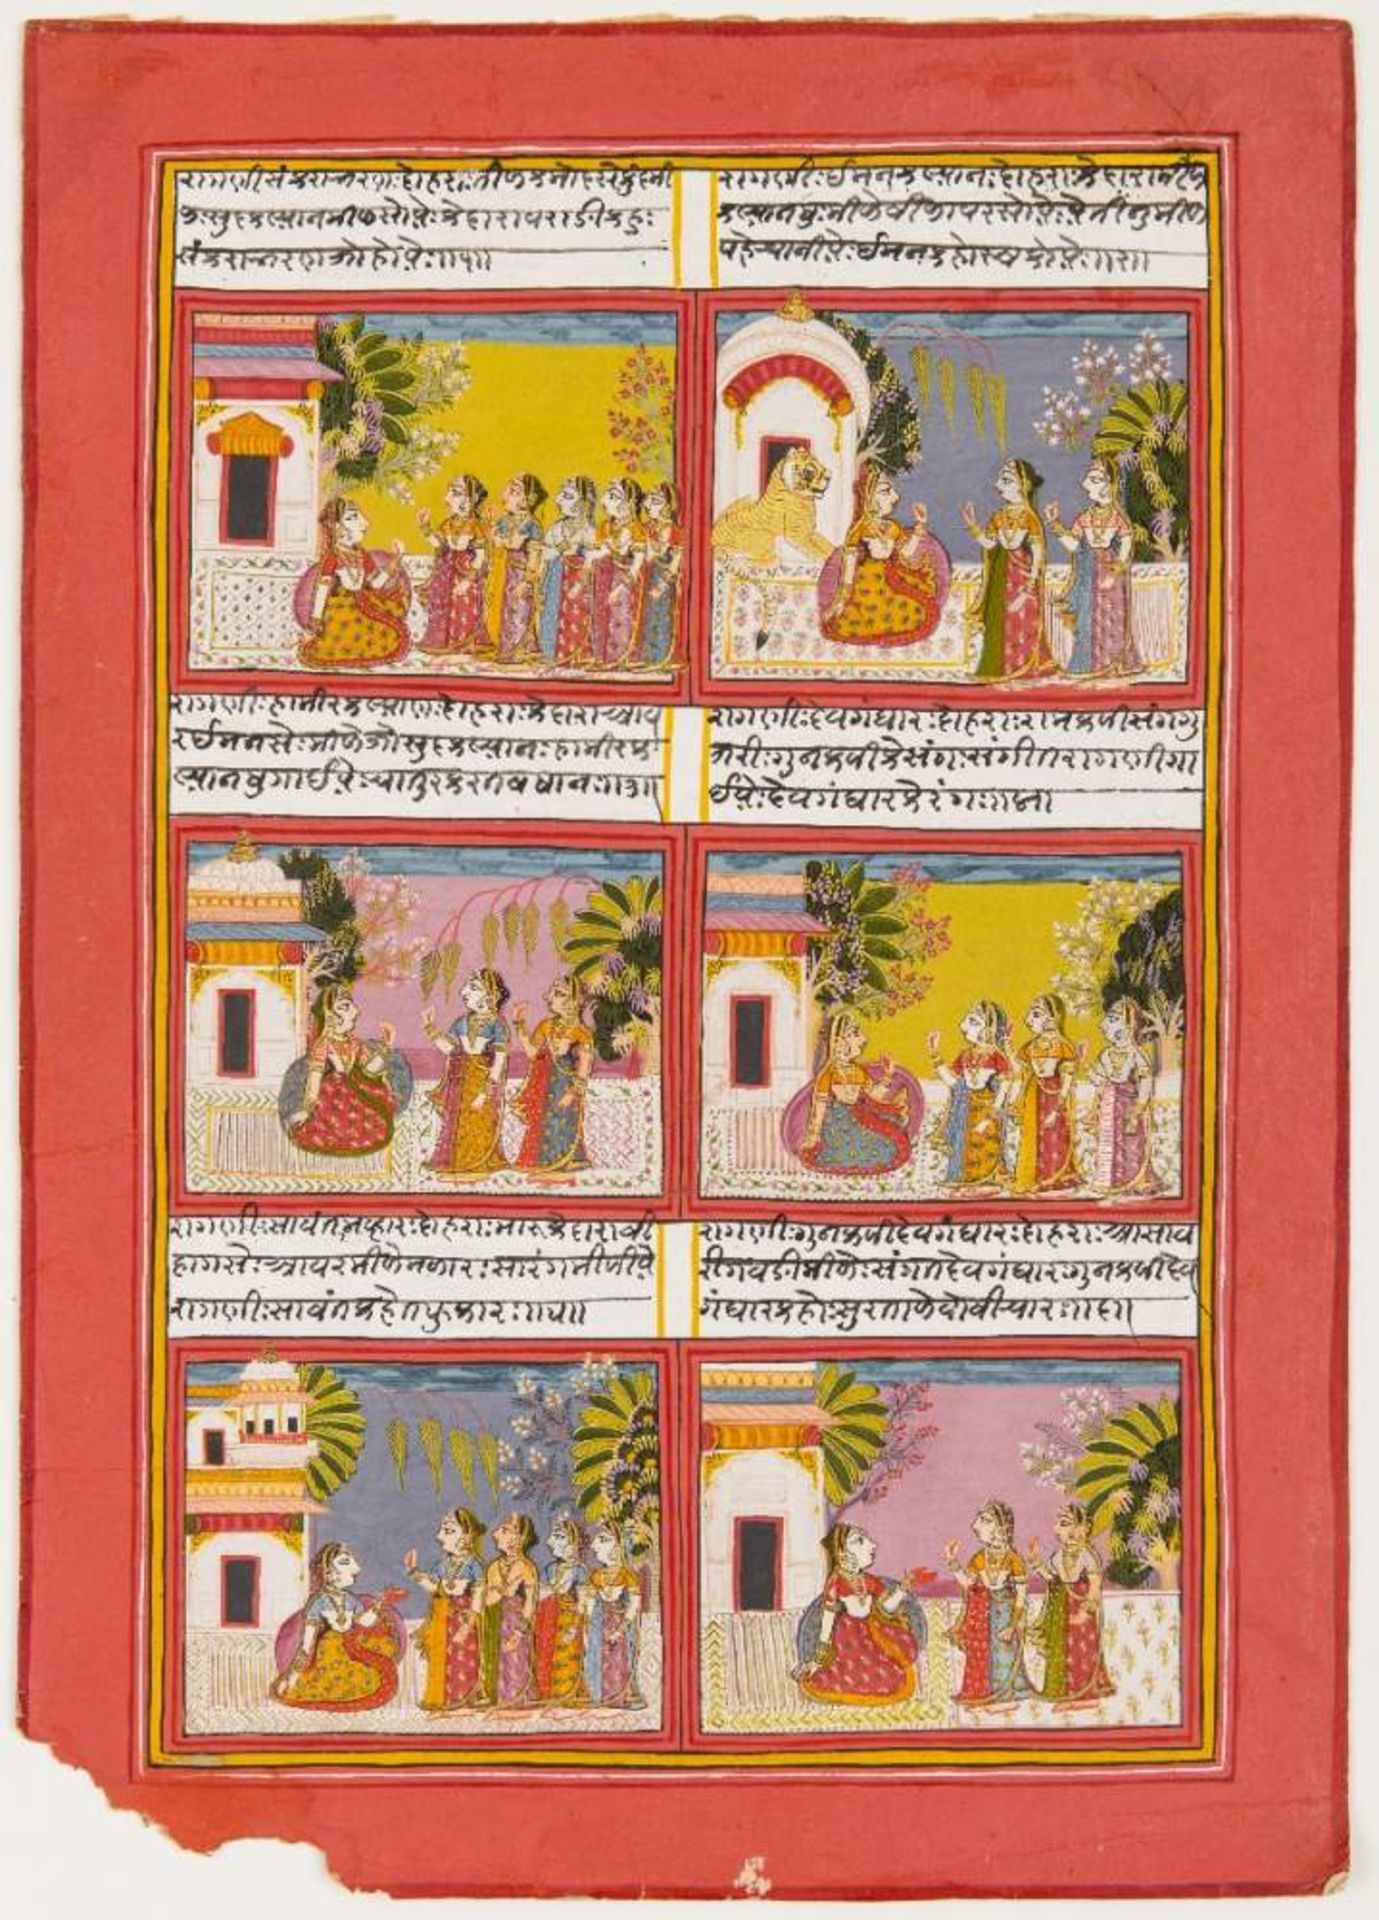 PAVILLONS UND NOBLE DAMENMiniatur-Malerei mit Farben und Gold. Indien, um 1800Großes Blatt mit sechs